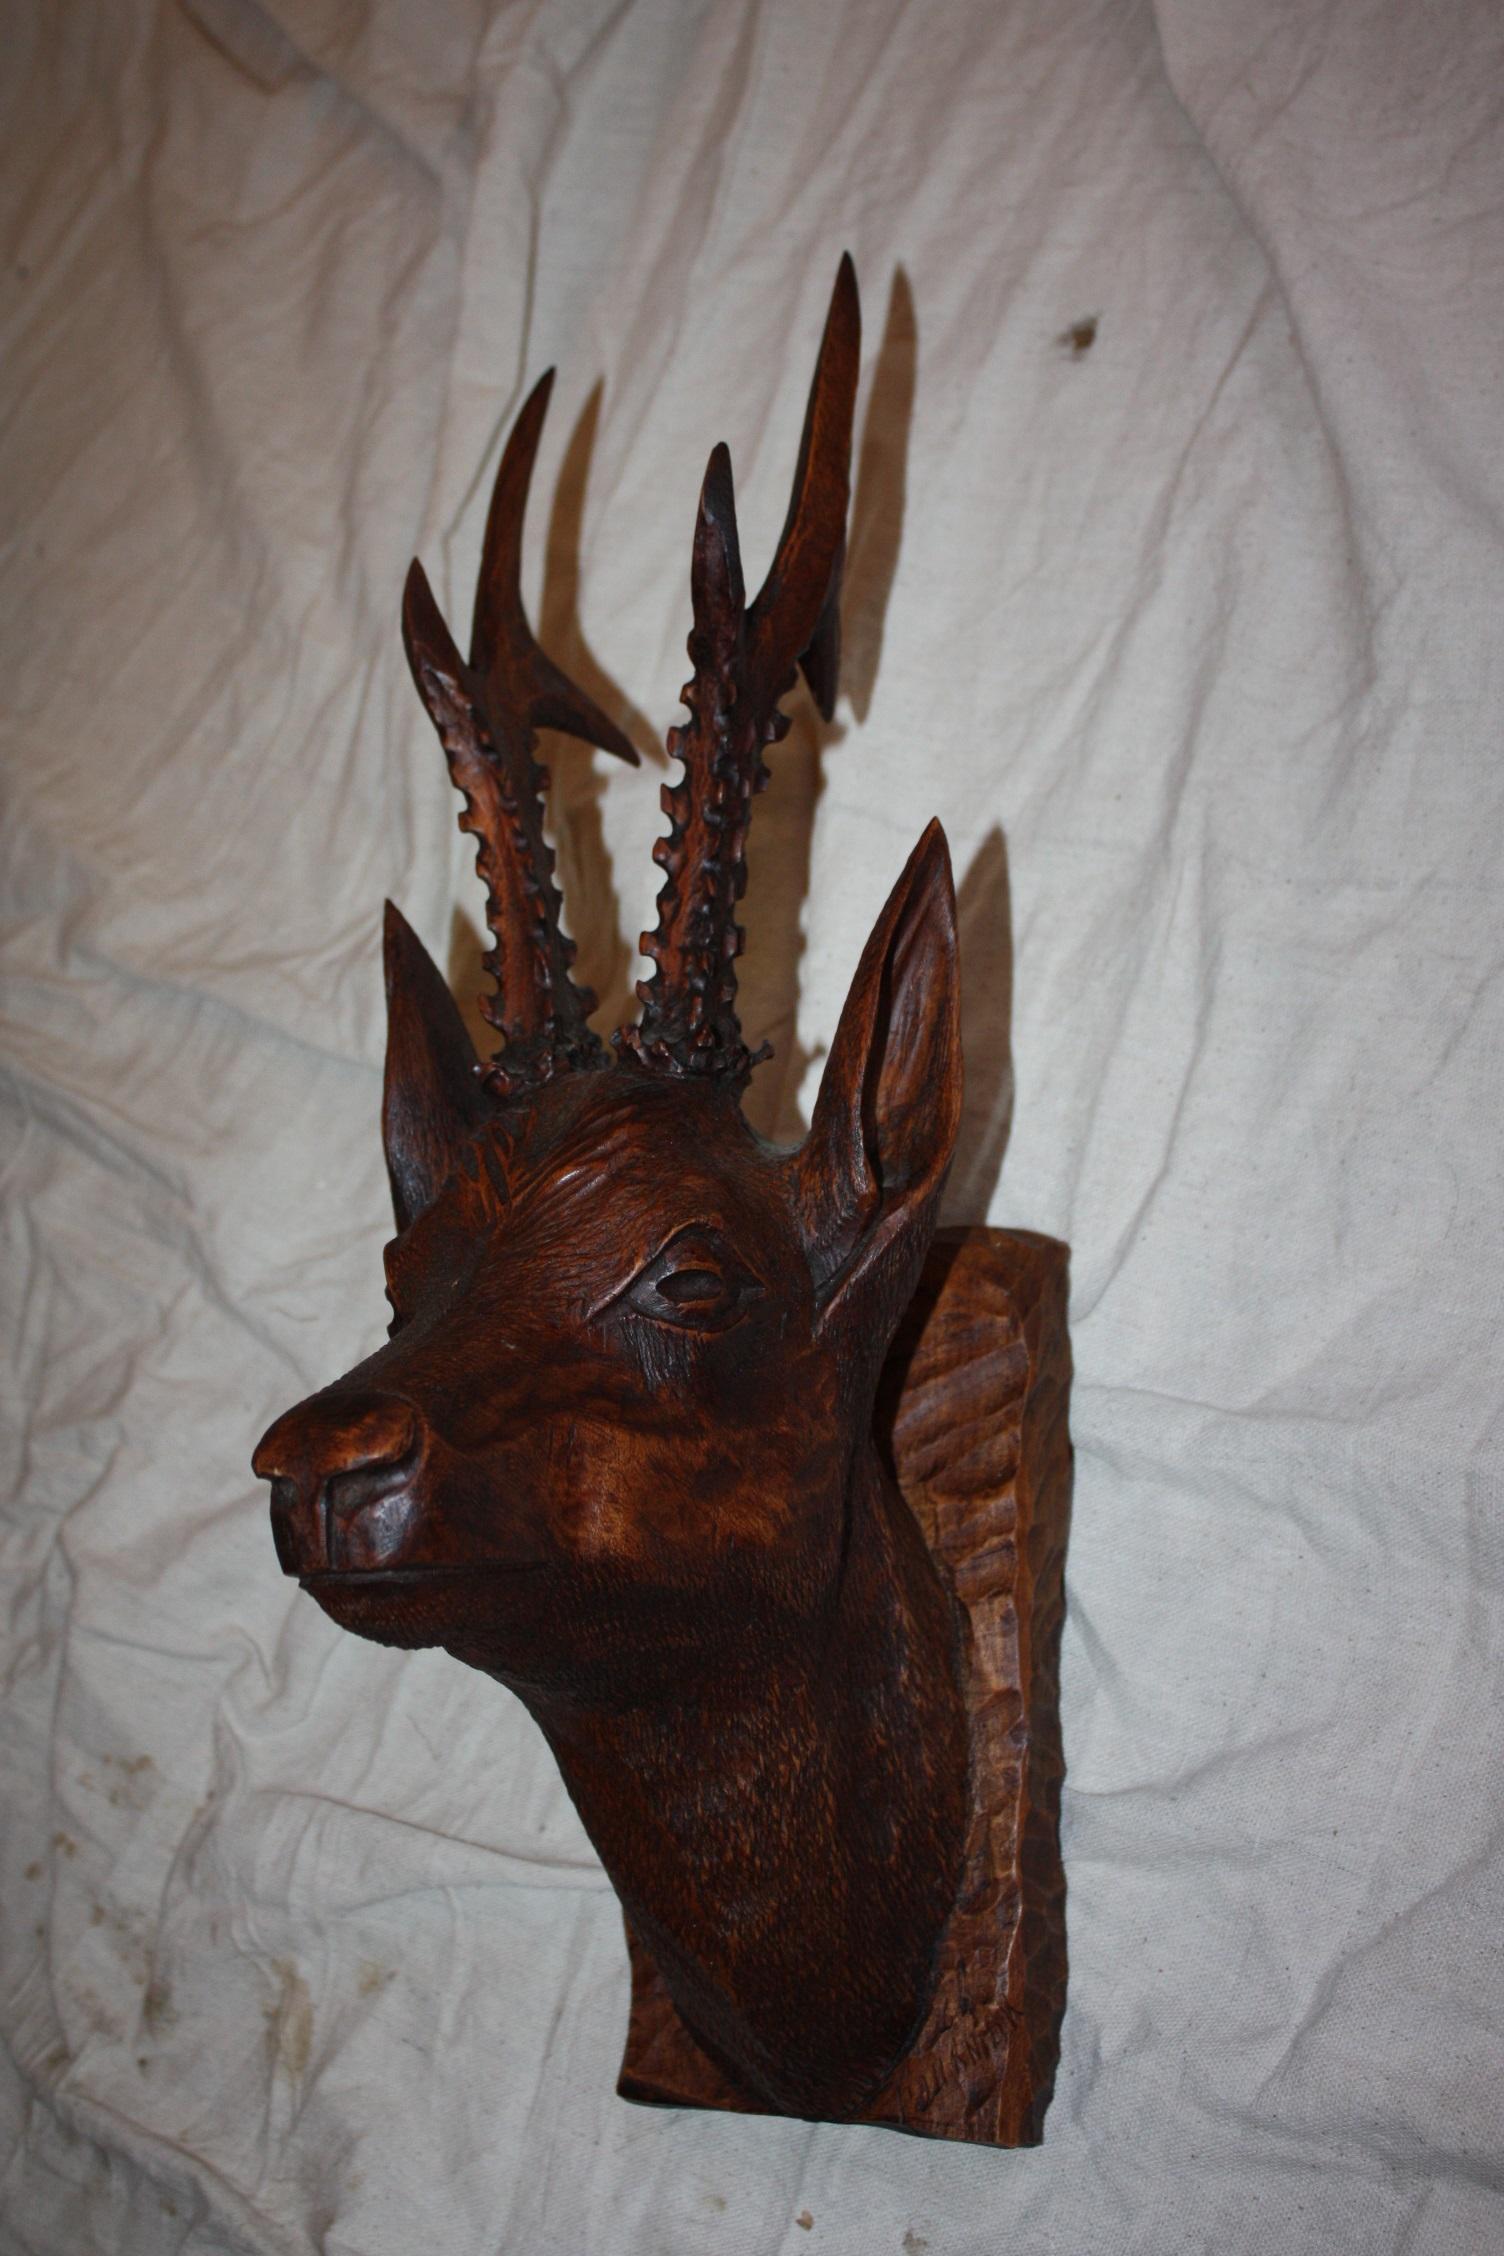 Black forest carved wood deer head.